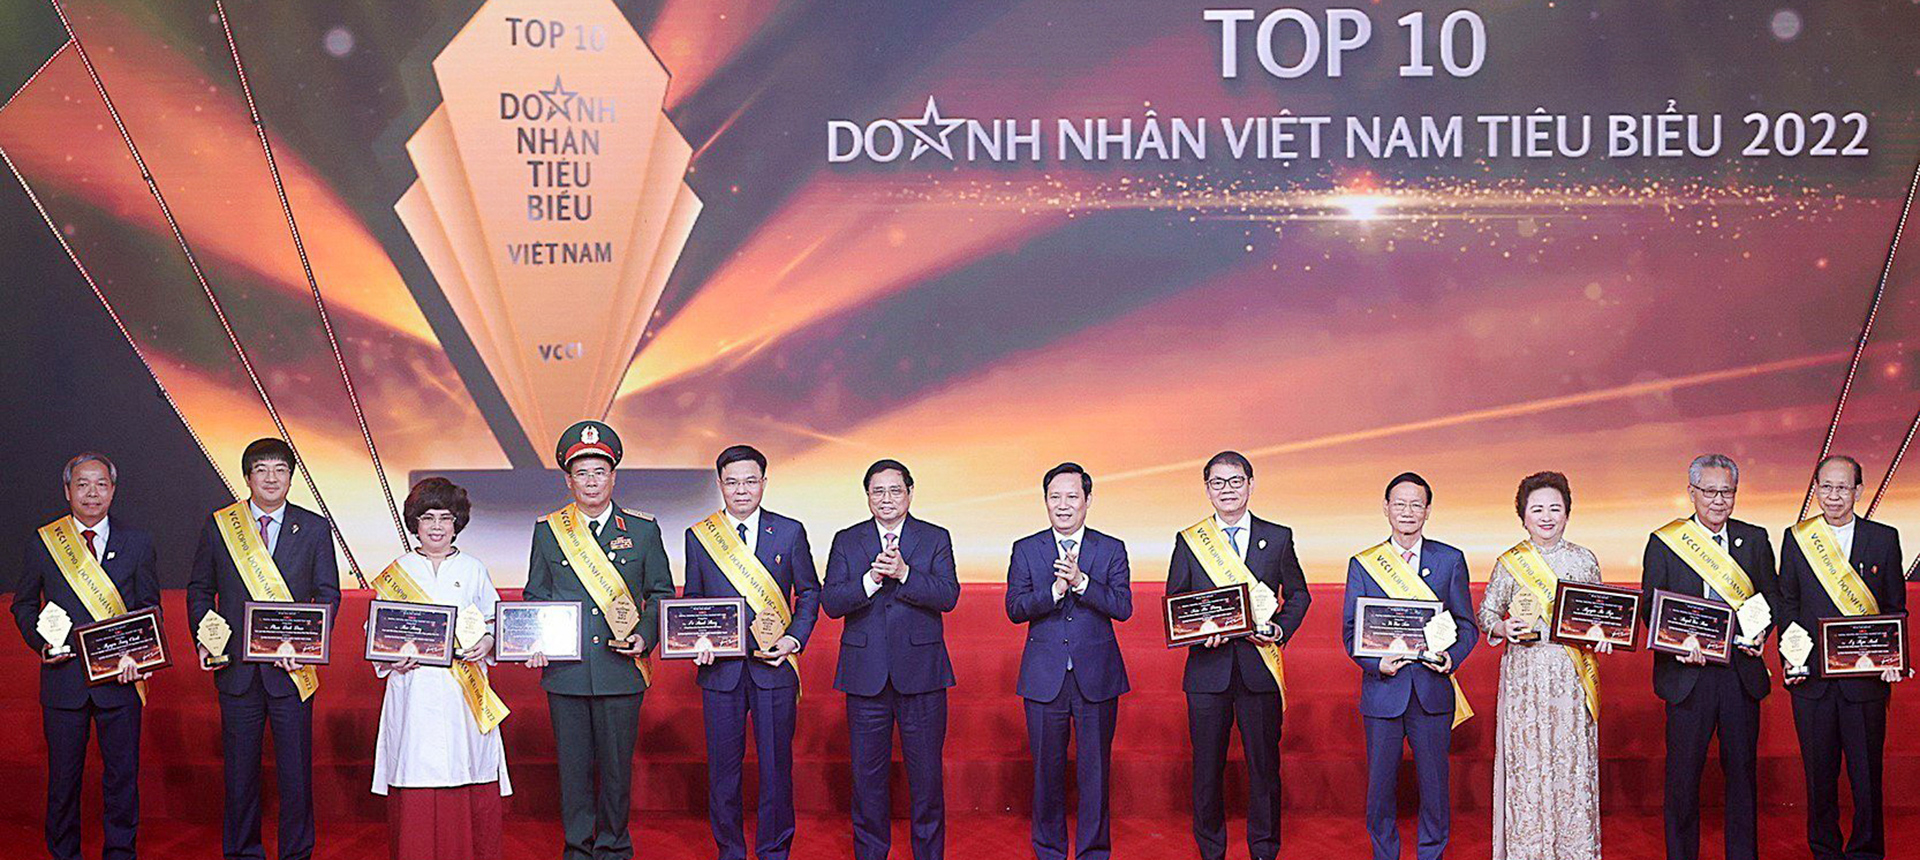 CT HĐQT THACO Trần Bá Dương được vinh danh Top 10 Doanh nhân Việt Nam